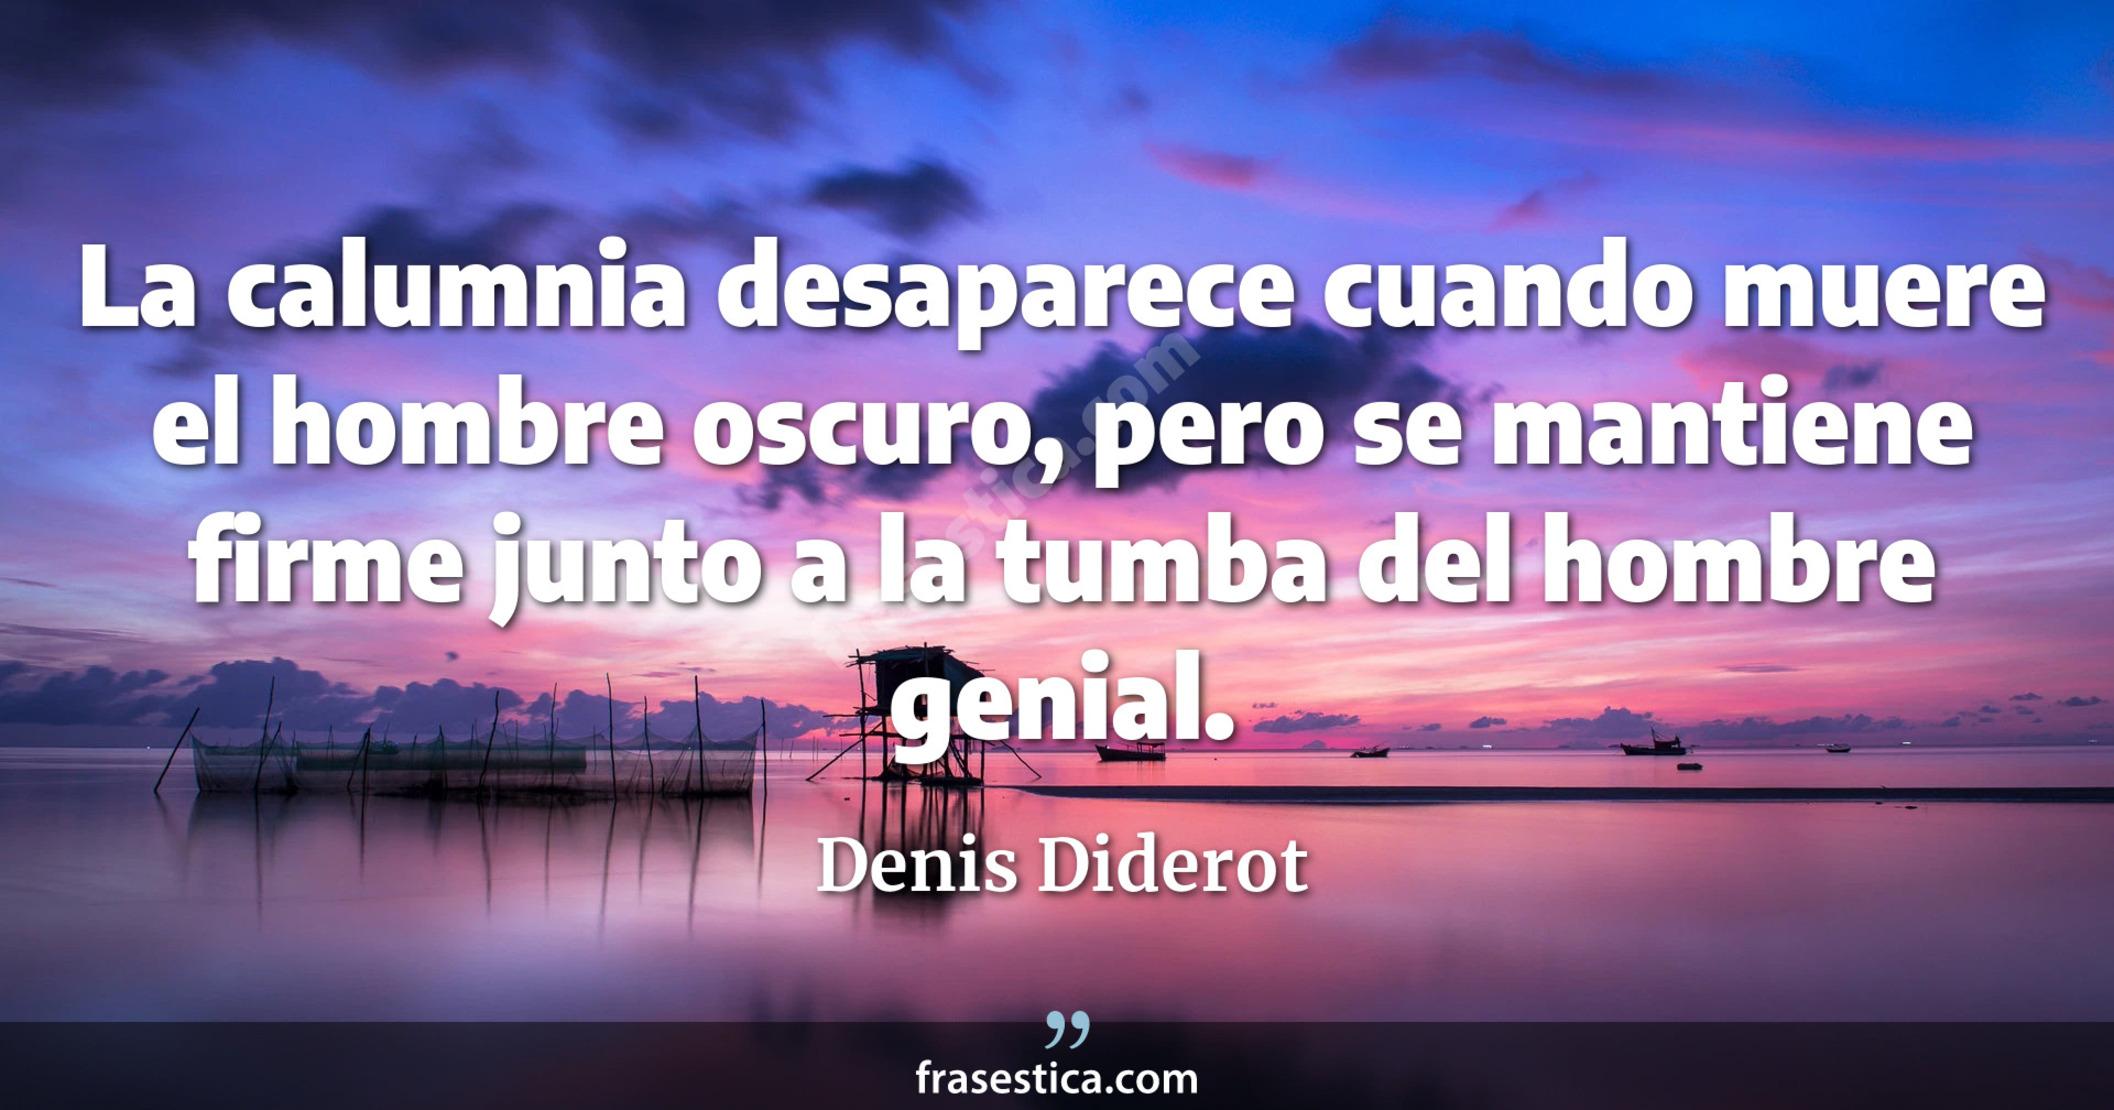 La calumnia desaparece cuando muere el hombre oscuro, pero se mantiene firme junto a la tumba del hombre genial. - Denis Diderot